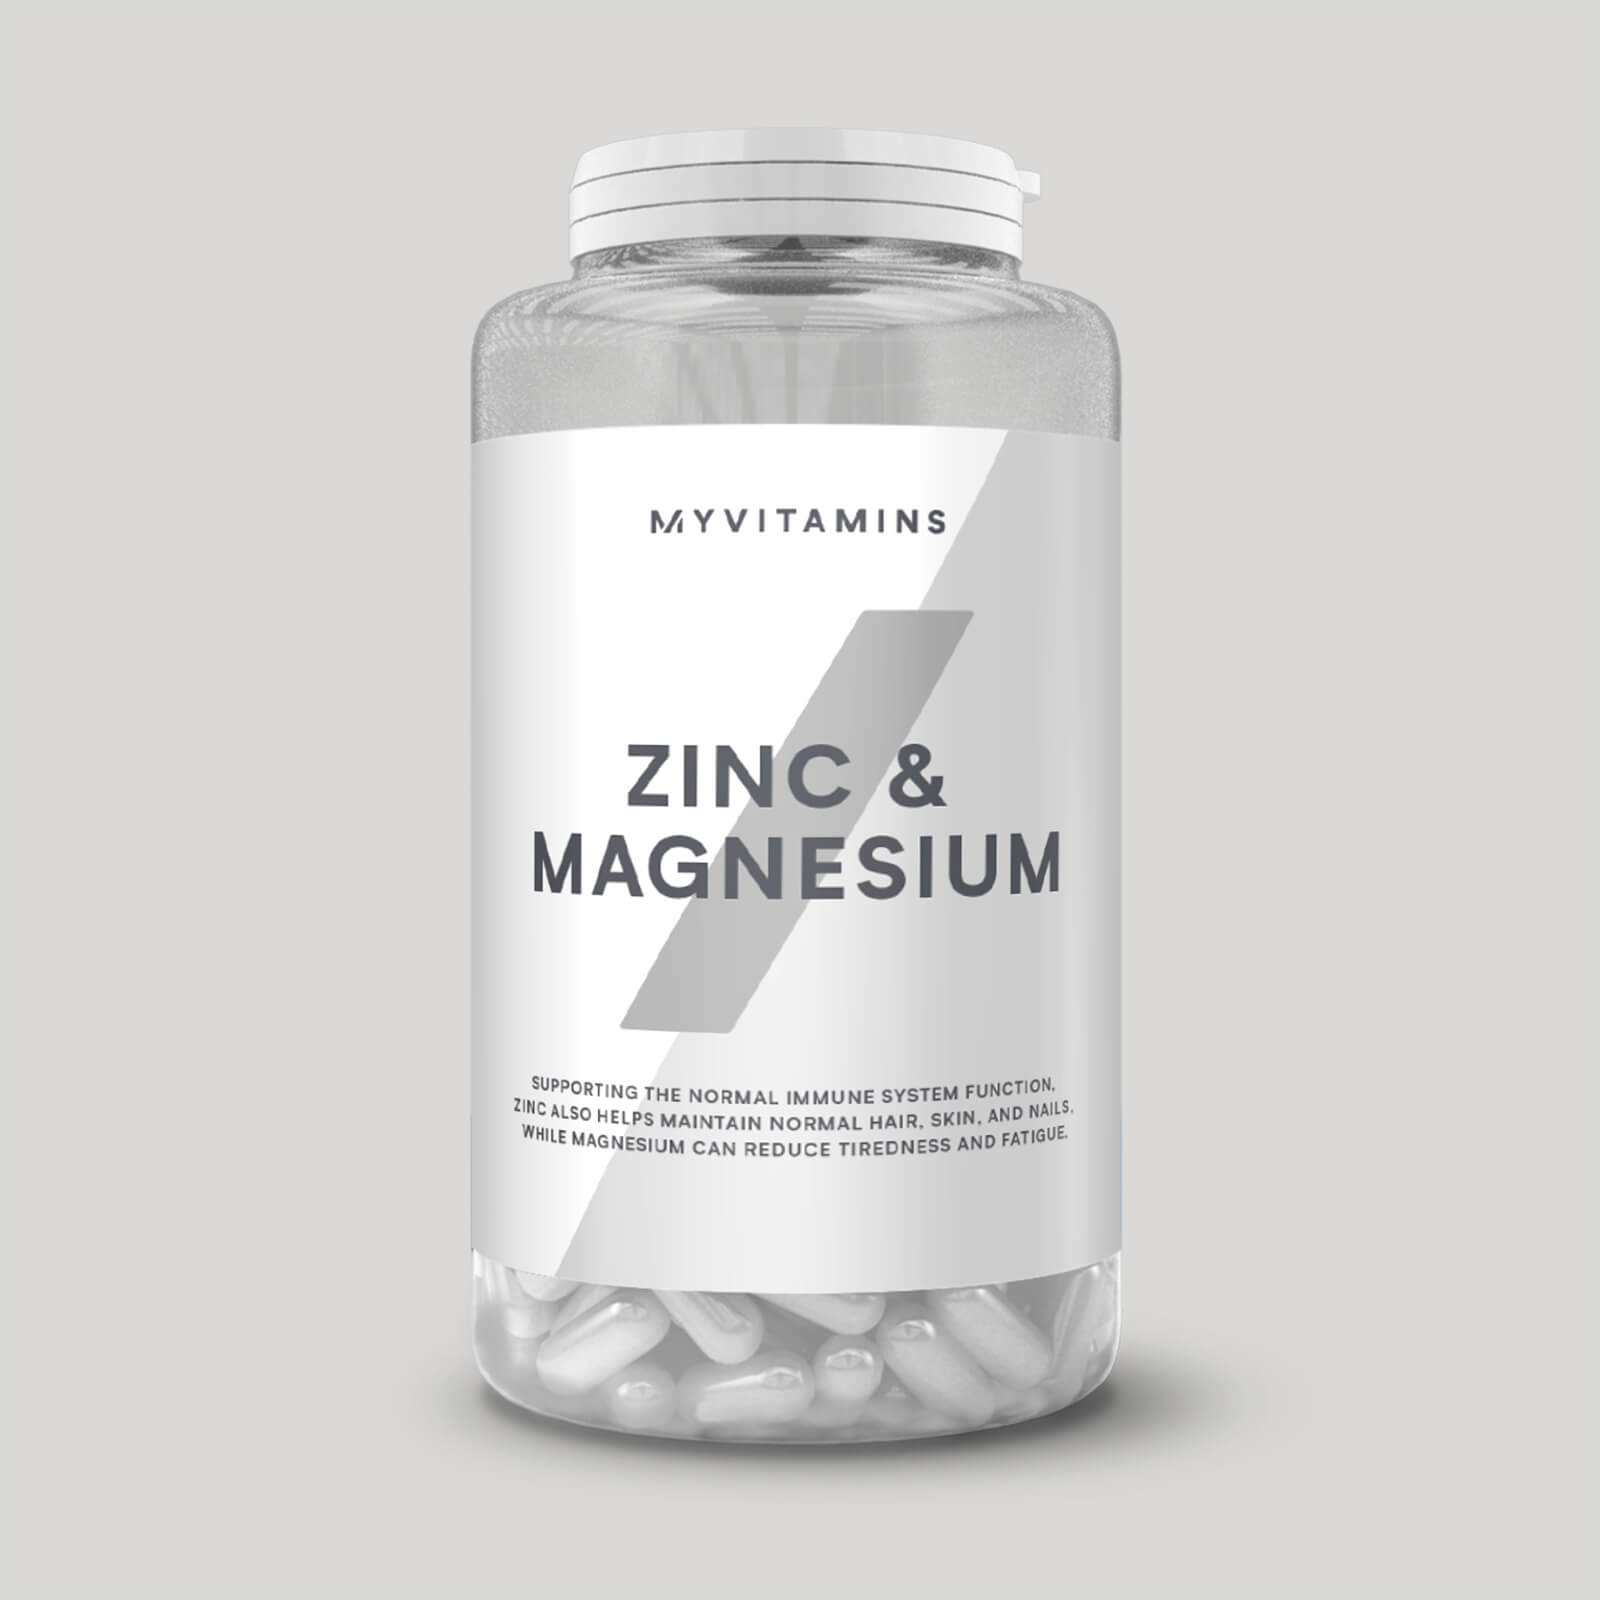 Myvitamins Zinc & Magnesium Capsules - 270Capsules